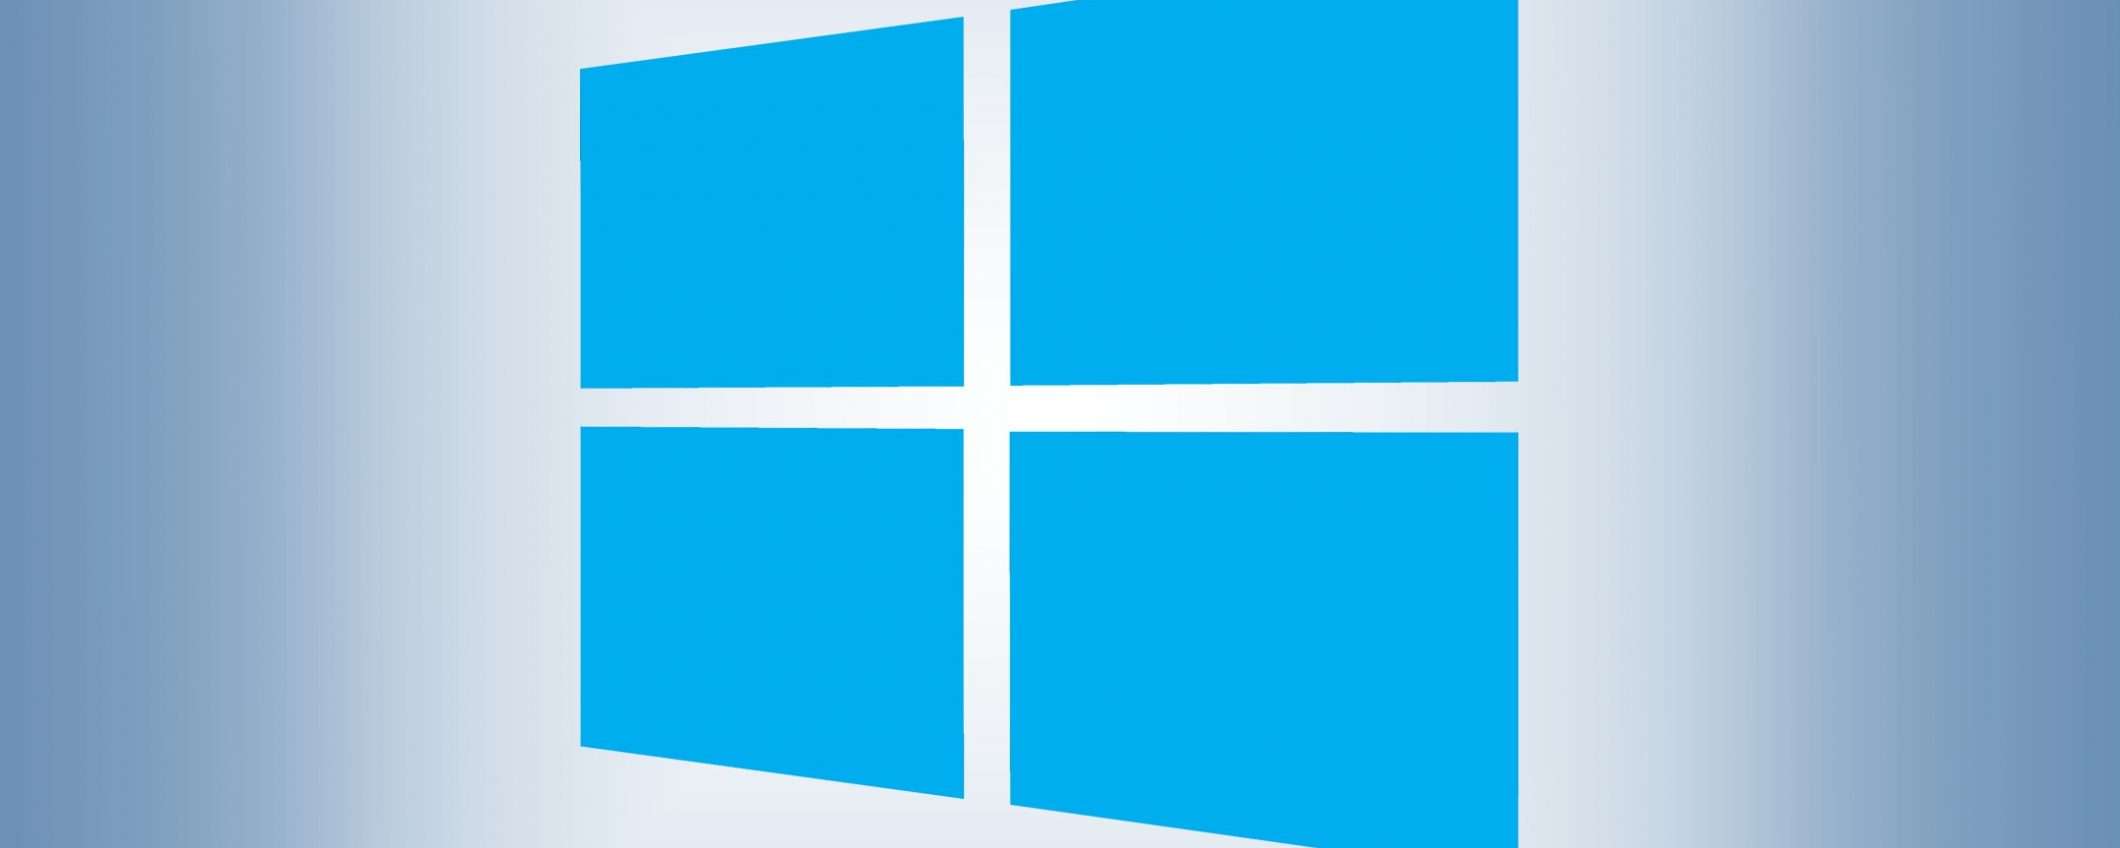 Microsoft annuncia Project Reunion 0.5